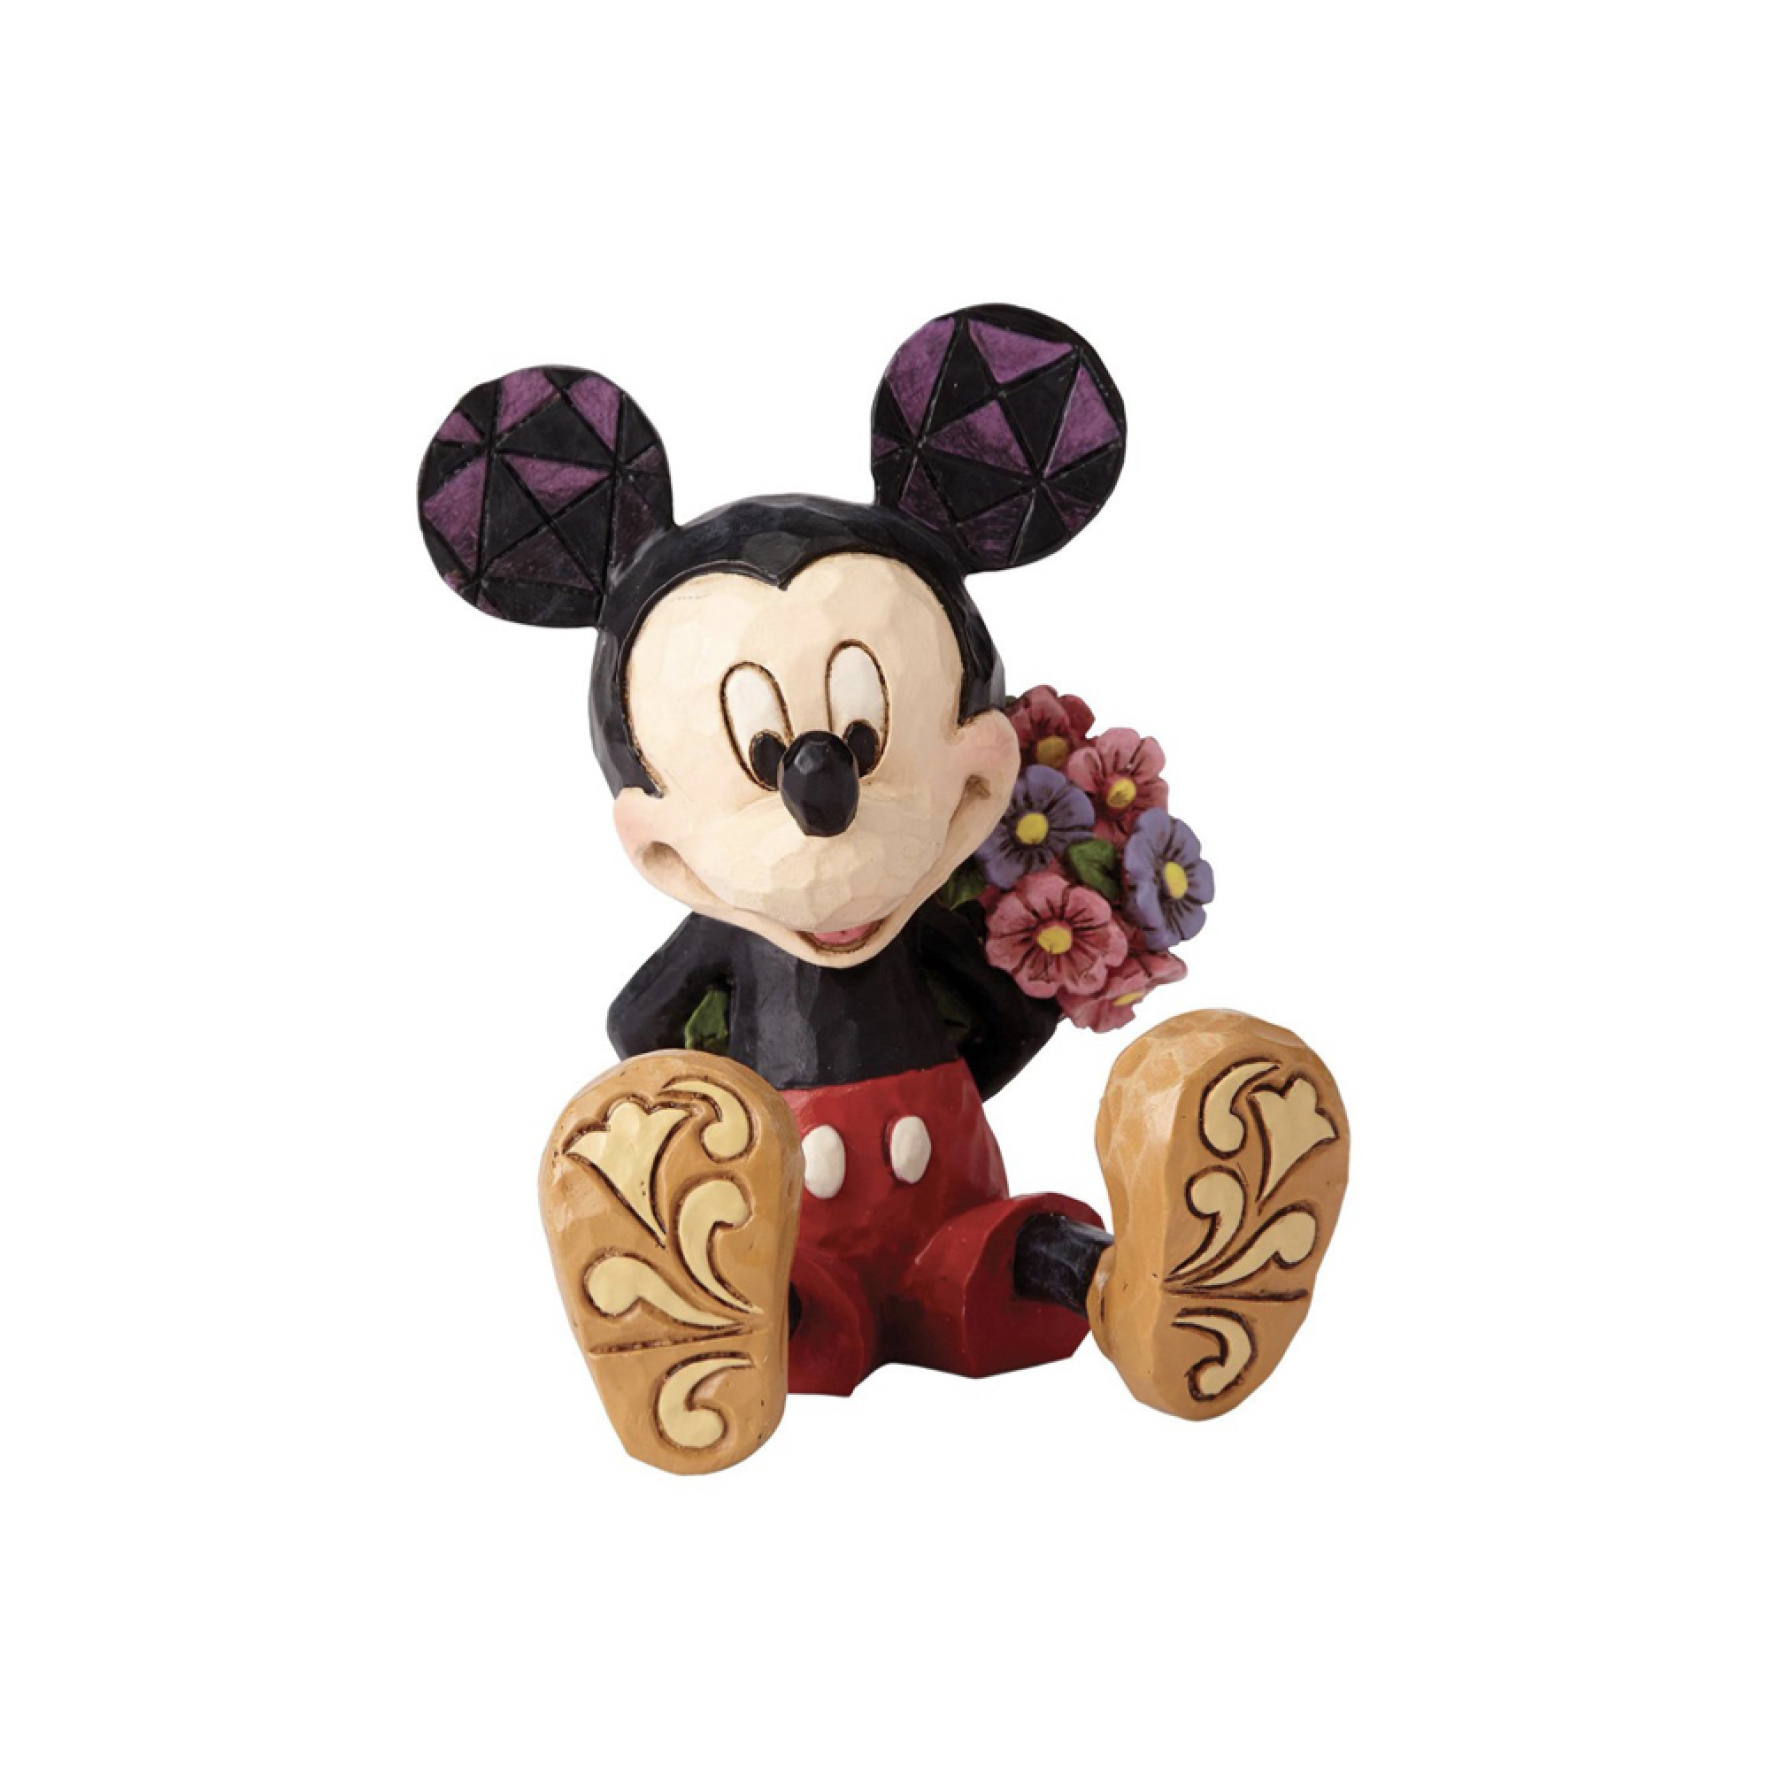  فیگور میکی موس Mini Mickey Mouse 4054284 